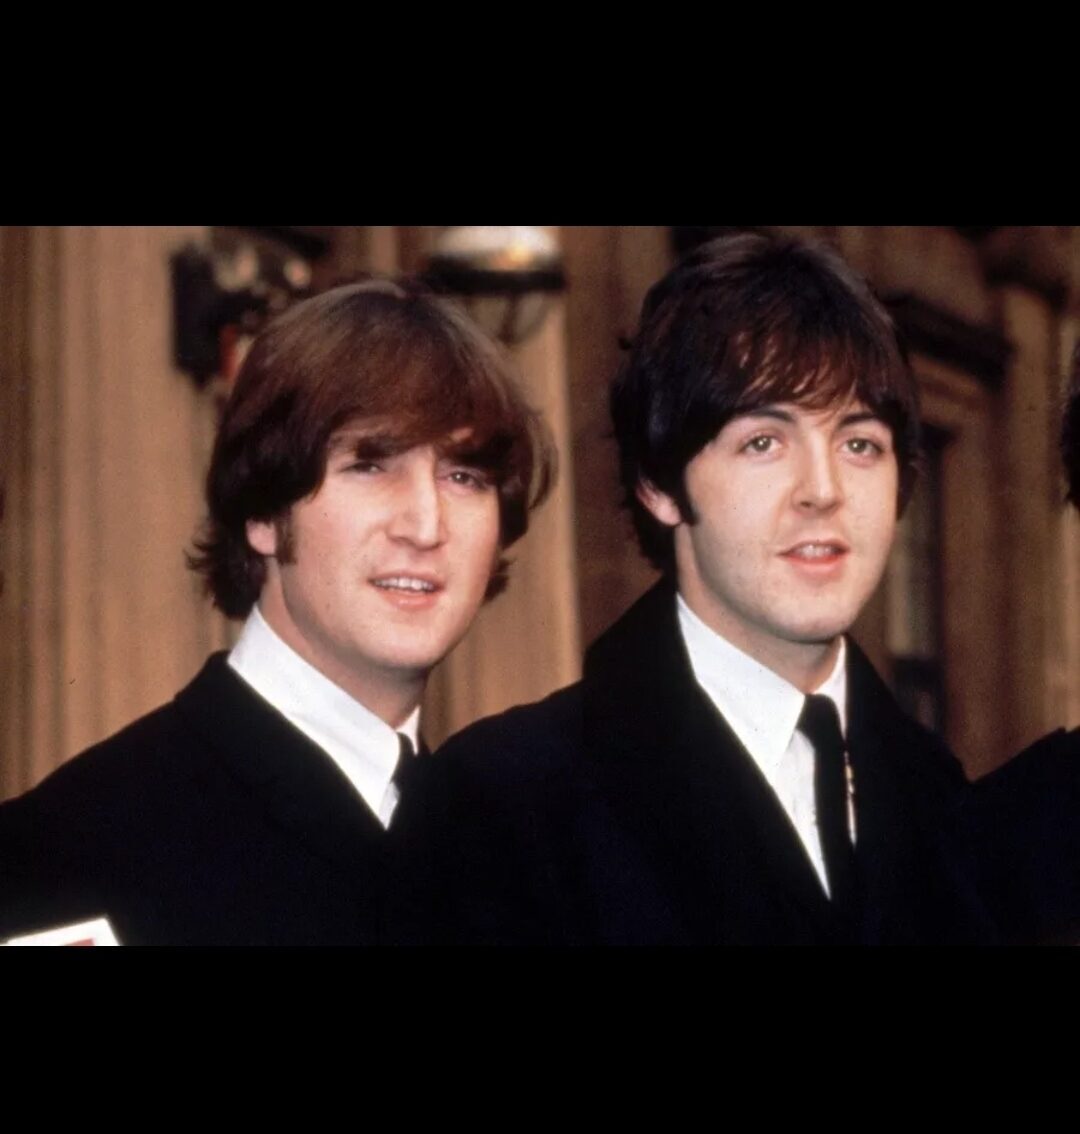 66 лет назад состоялась встреча Джона Леннона и Пола Маккартни